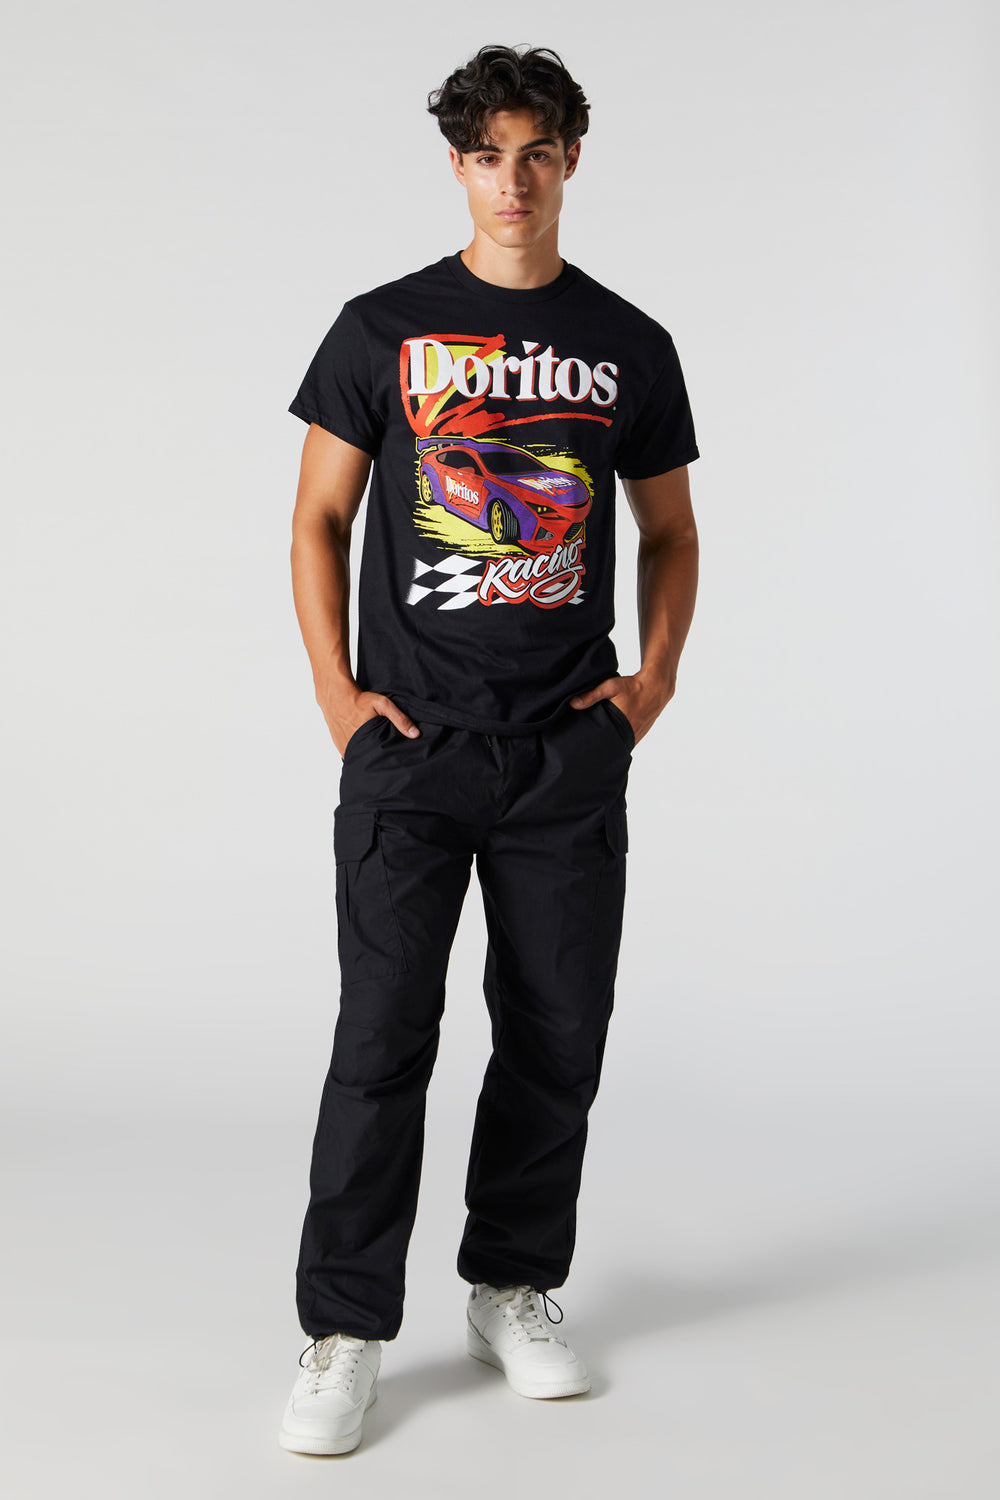 Doritos Graphic T-Shirt Doritos Graphic T-Shirt 4